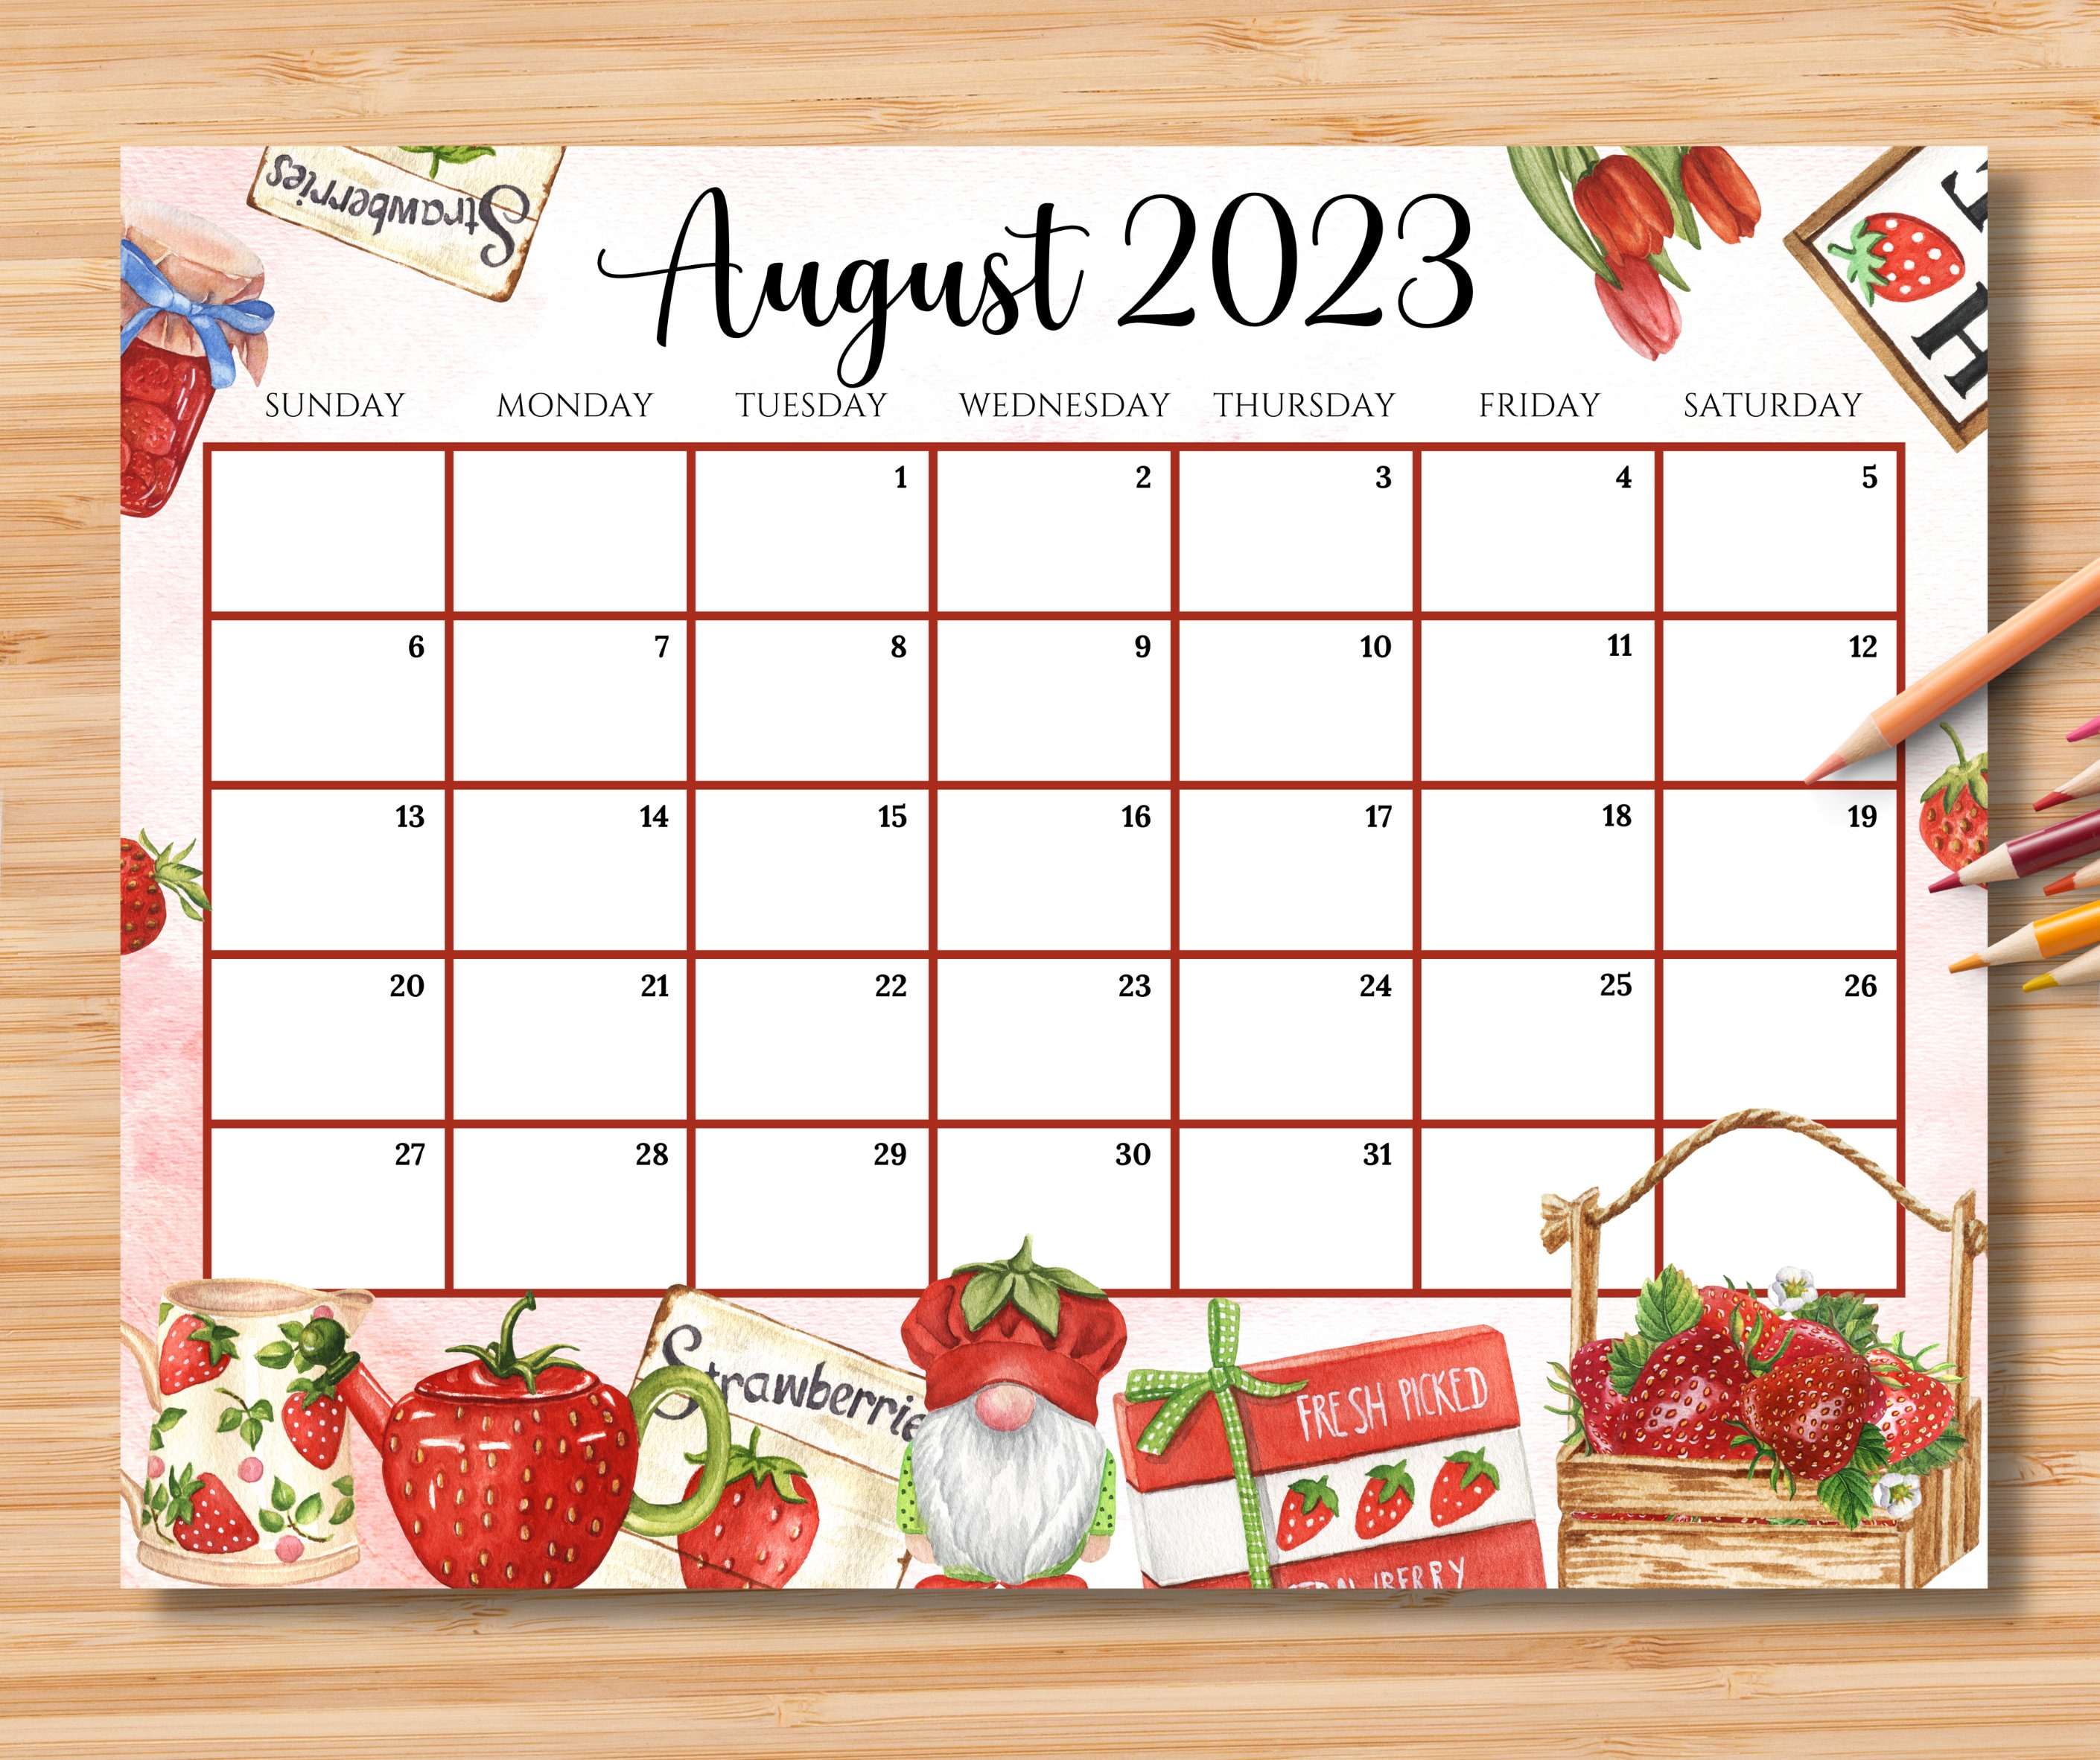 august-2023-calendar-editable-get-calender-2023-update